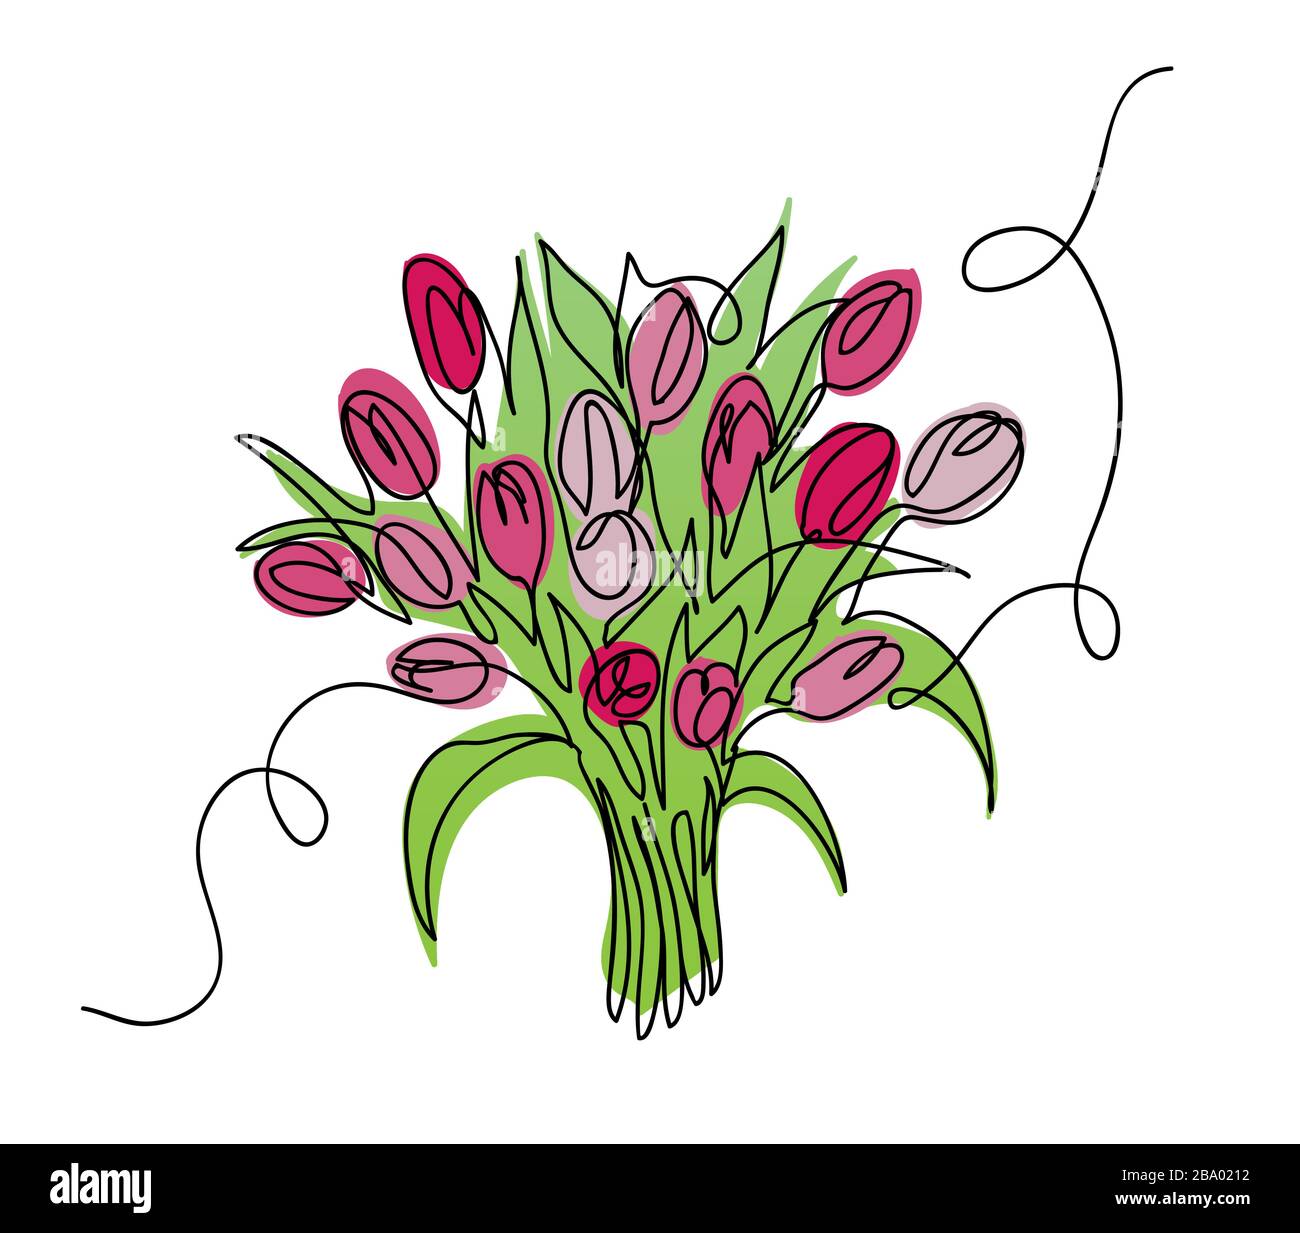 Tulpen-Blumenstrauß, Bloom Vector Sketch, Doodle Stock Vektor